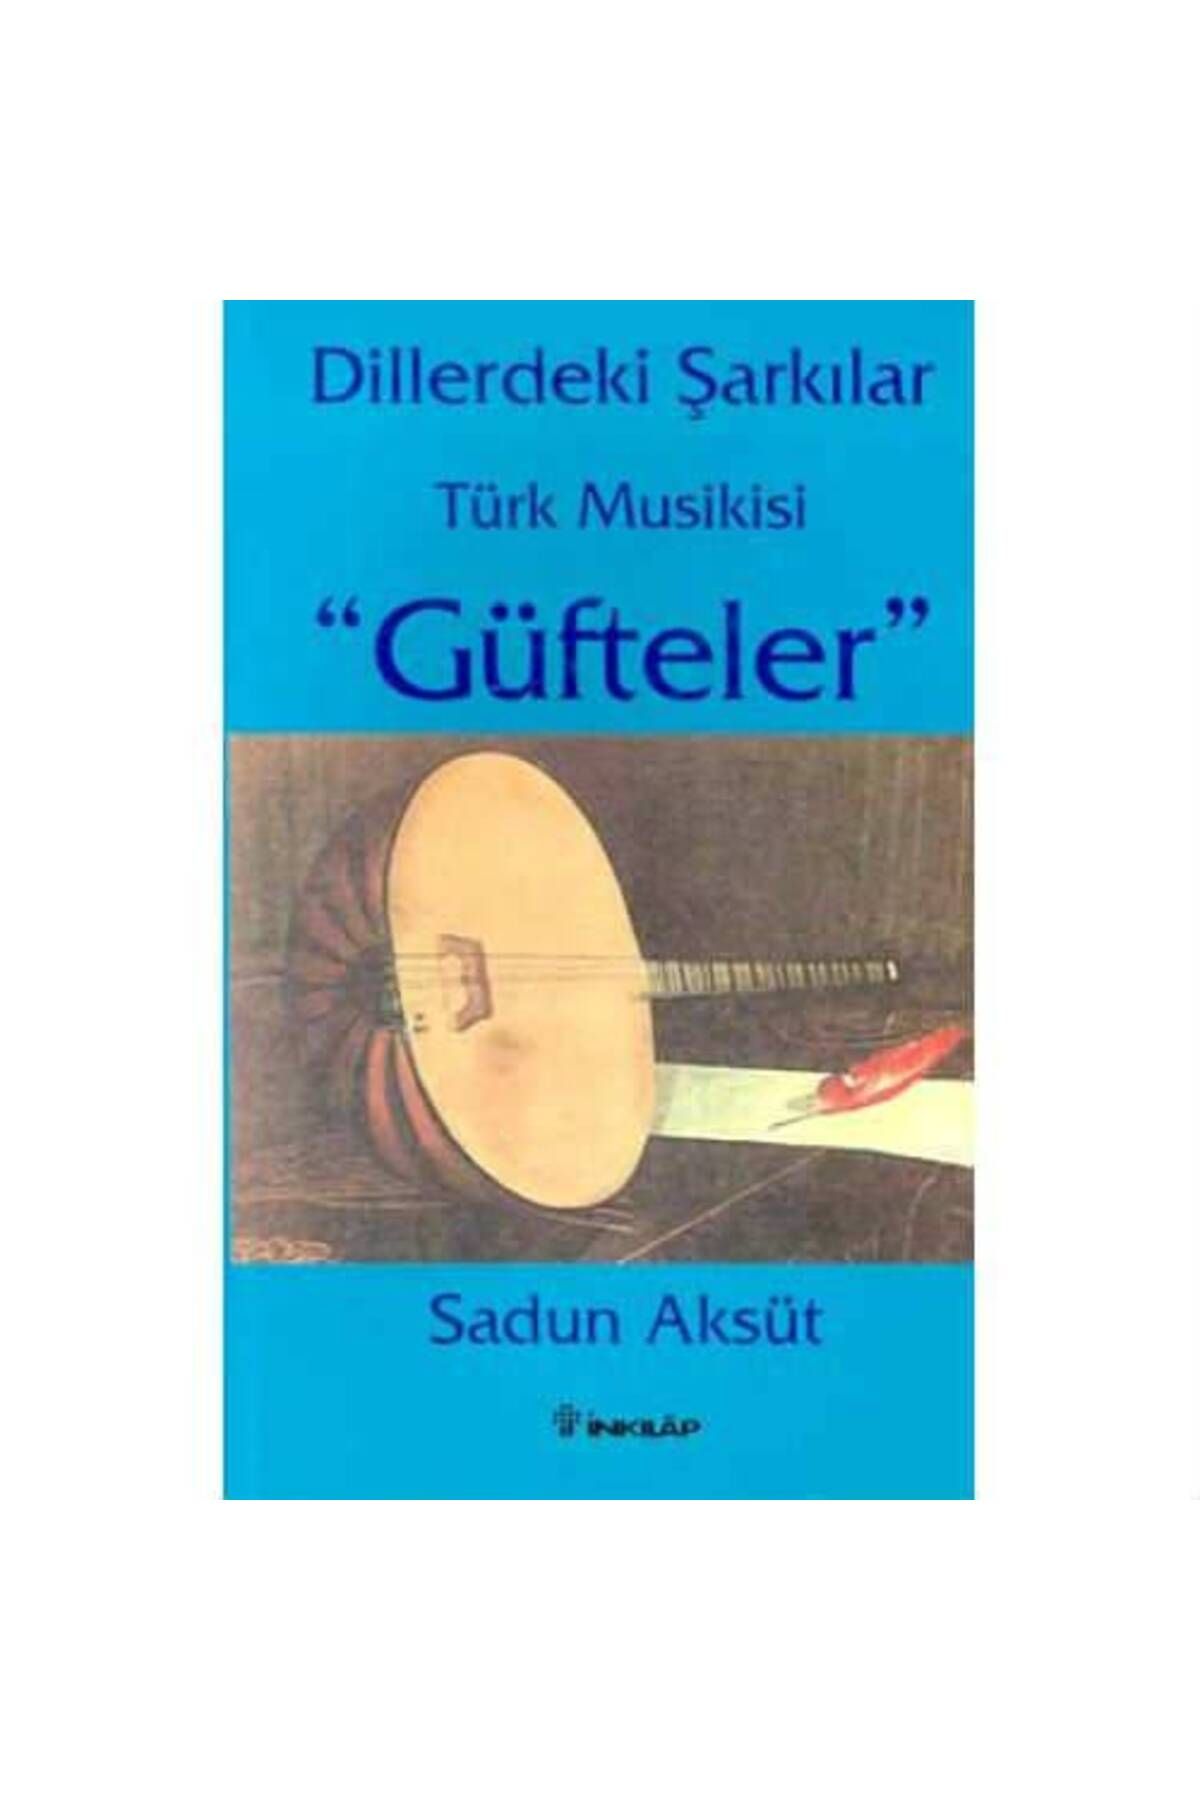 İnkılap Kitabevi Inky-003 Dillerdeki Şarkılar Türk Musıkisi Güfteler